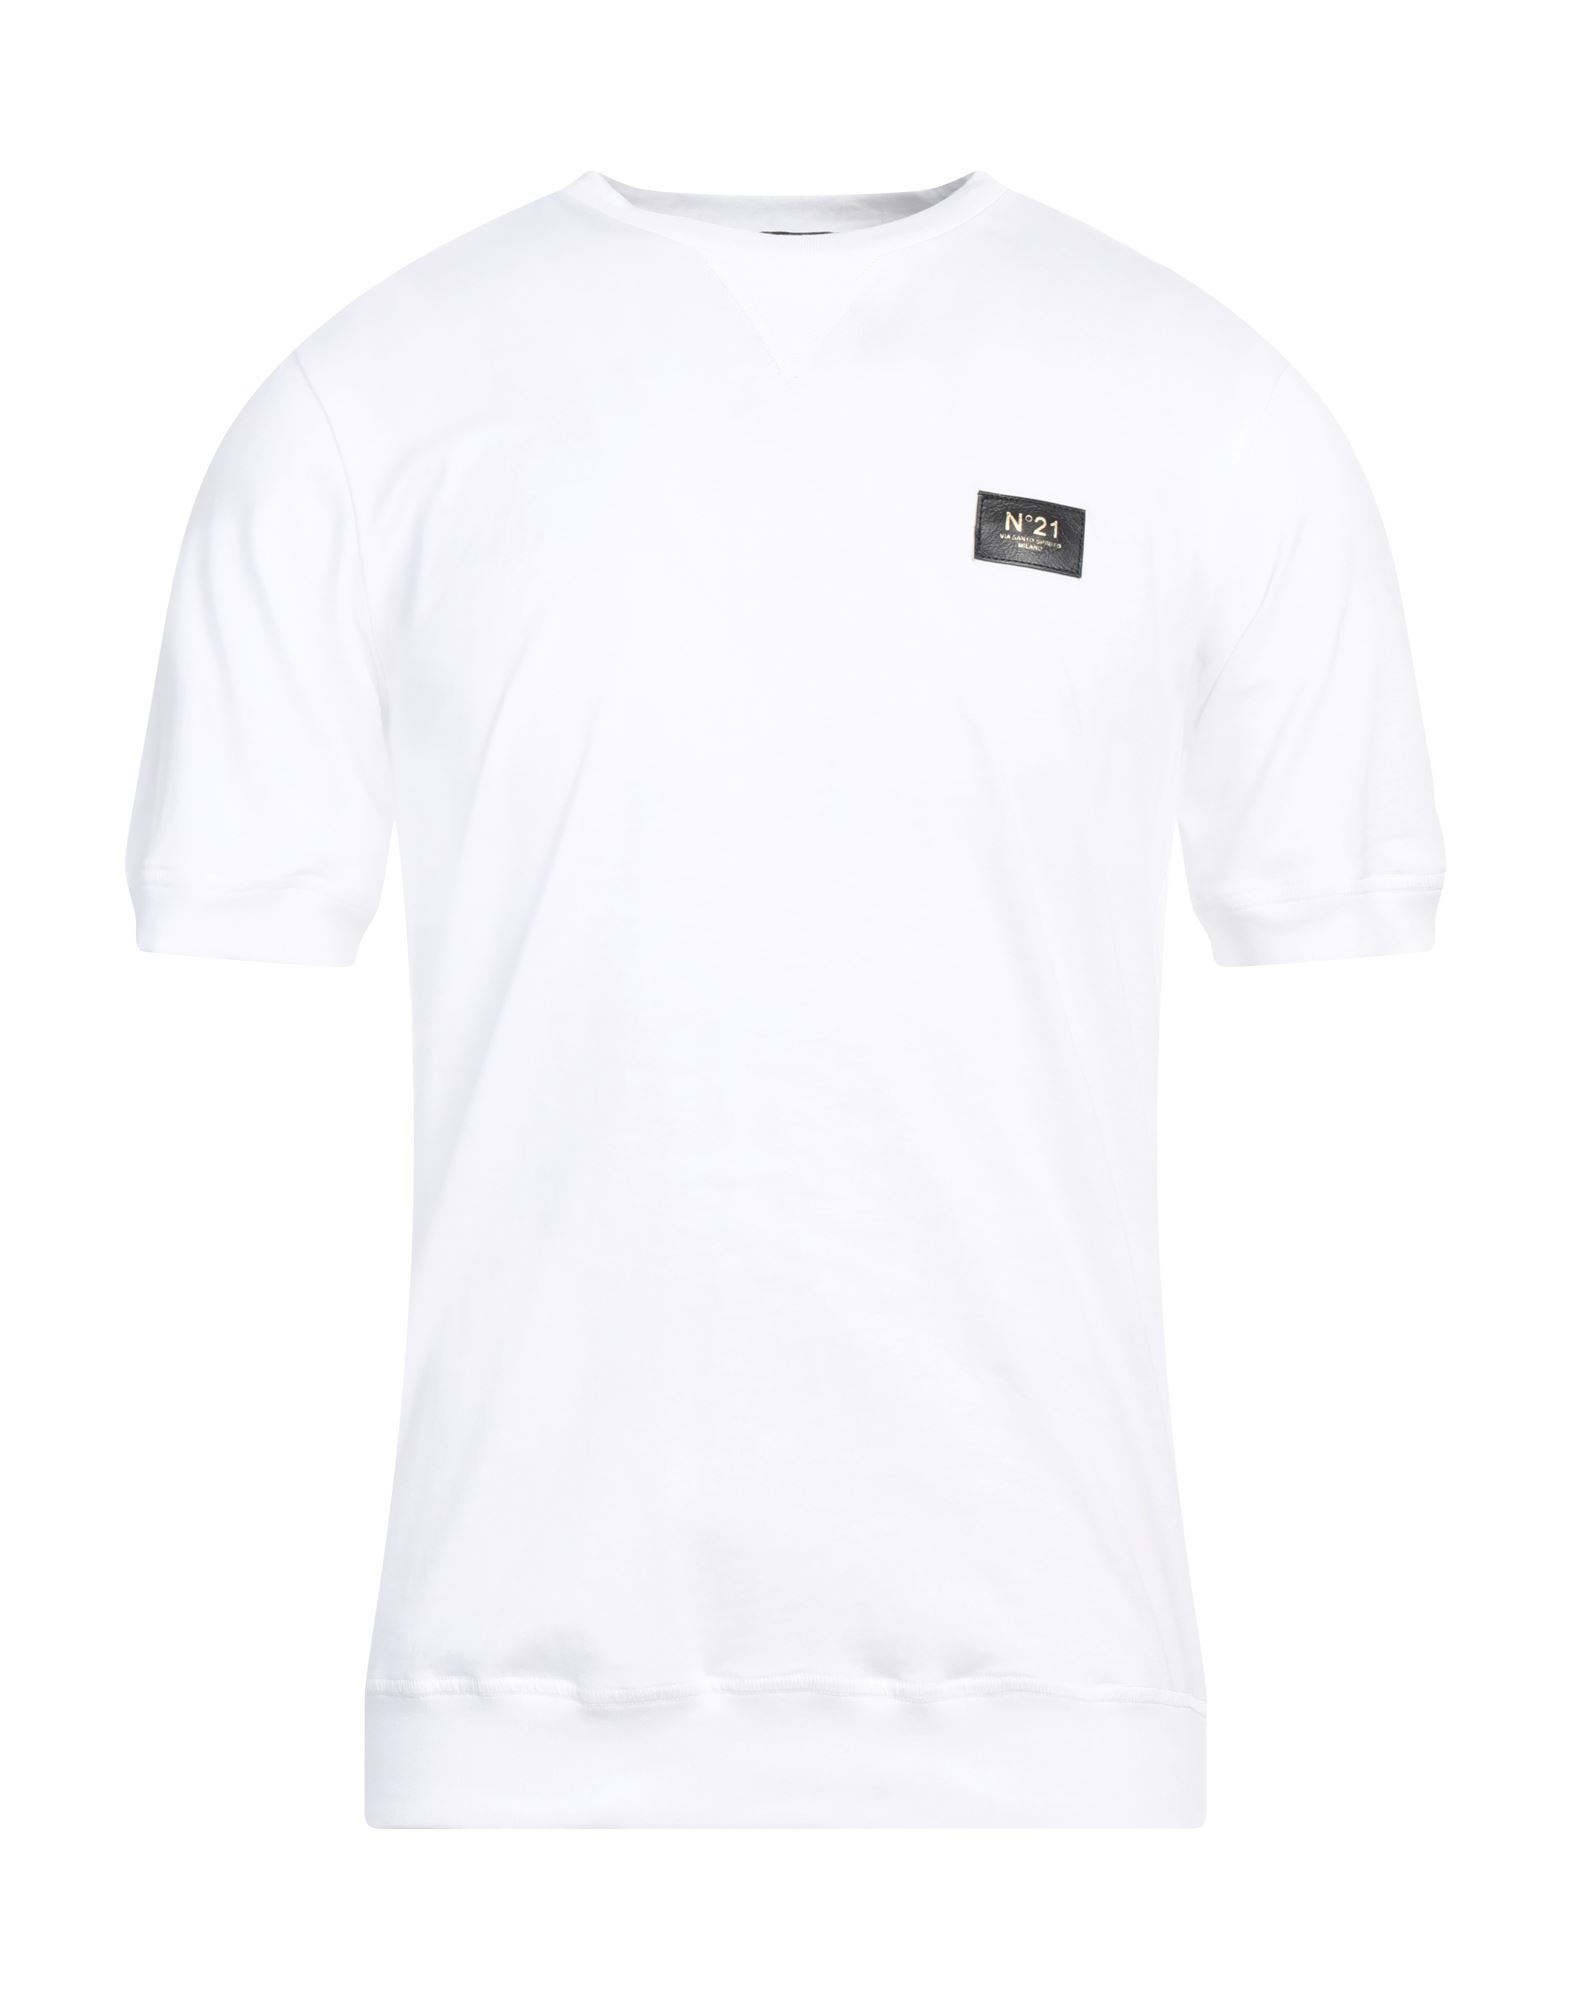 N°21 T-shirts Herren Weiß von N°21